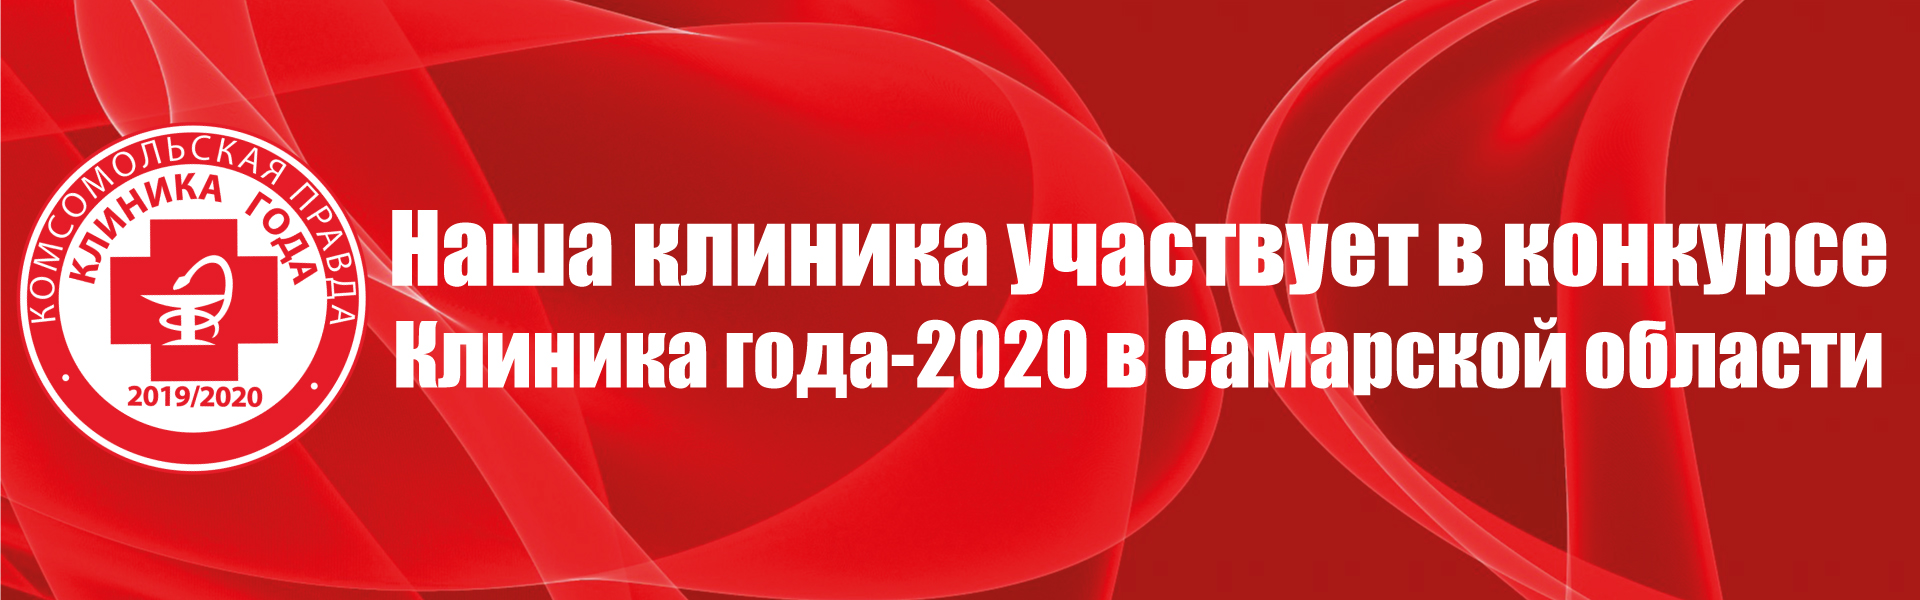 Клиника года - 2020 в Самарской области